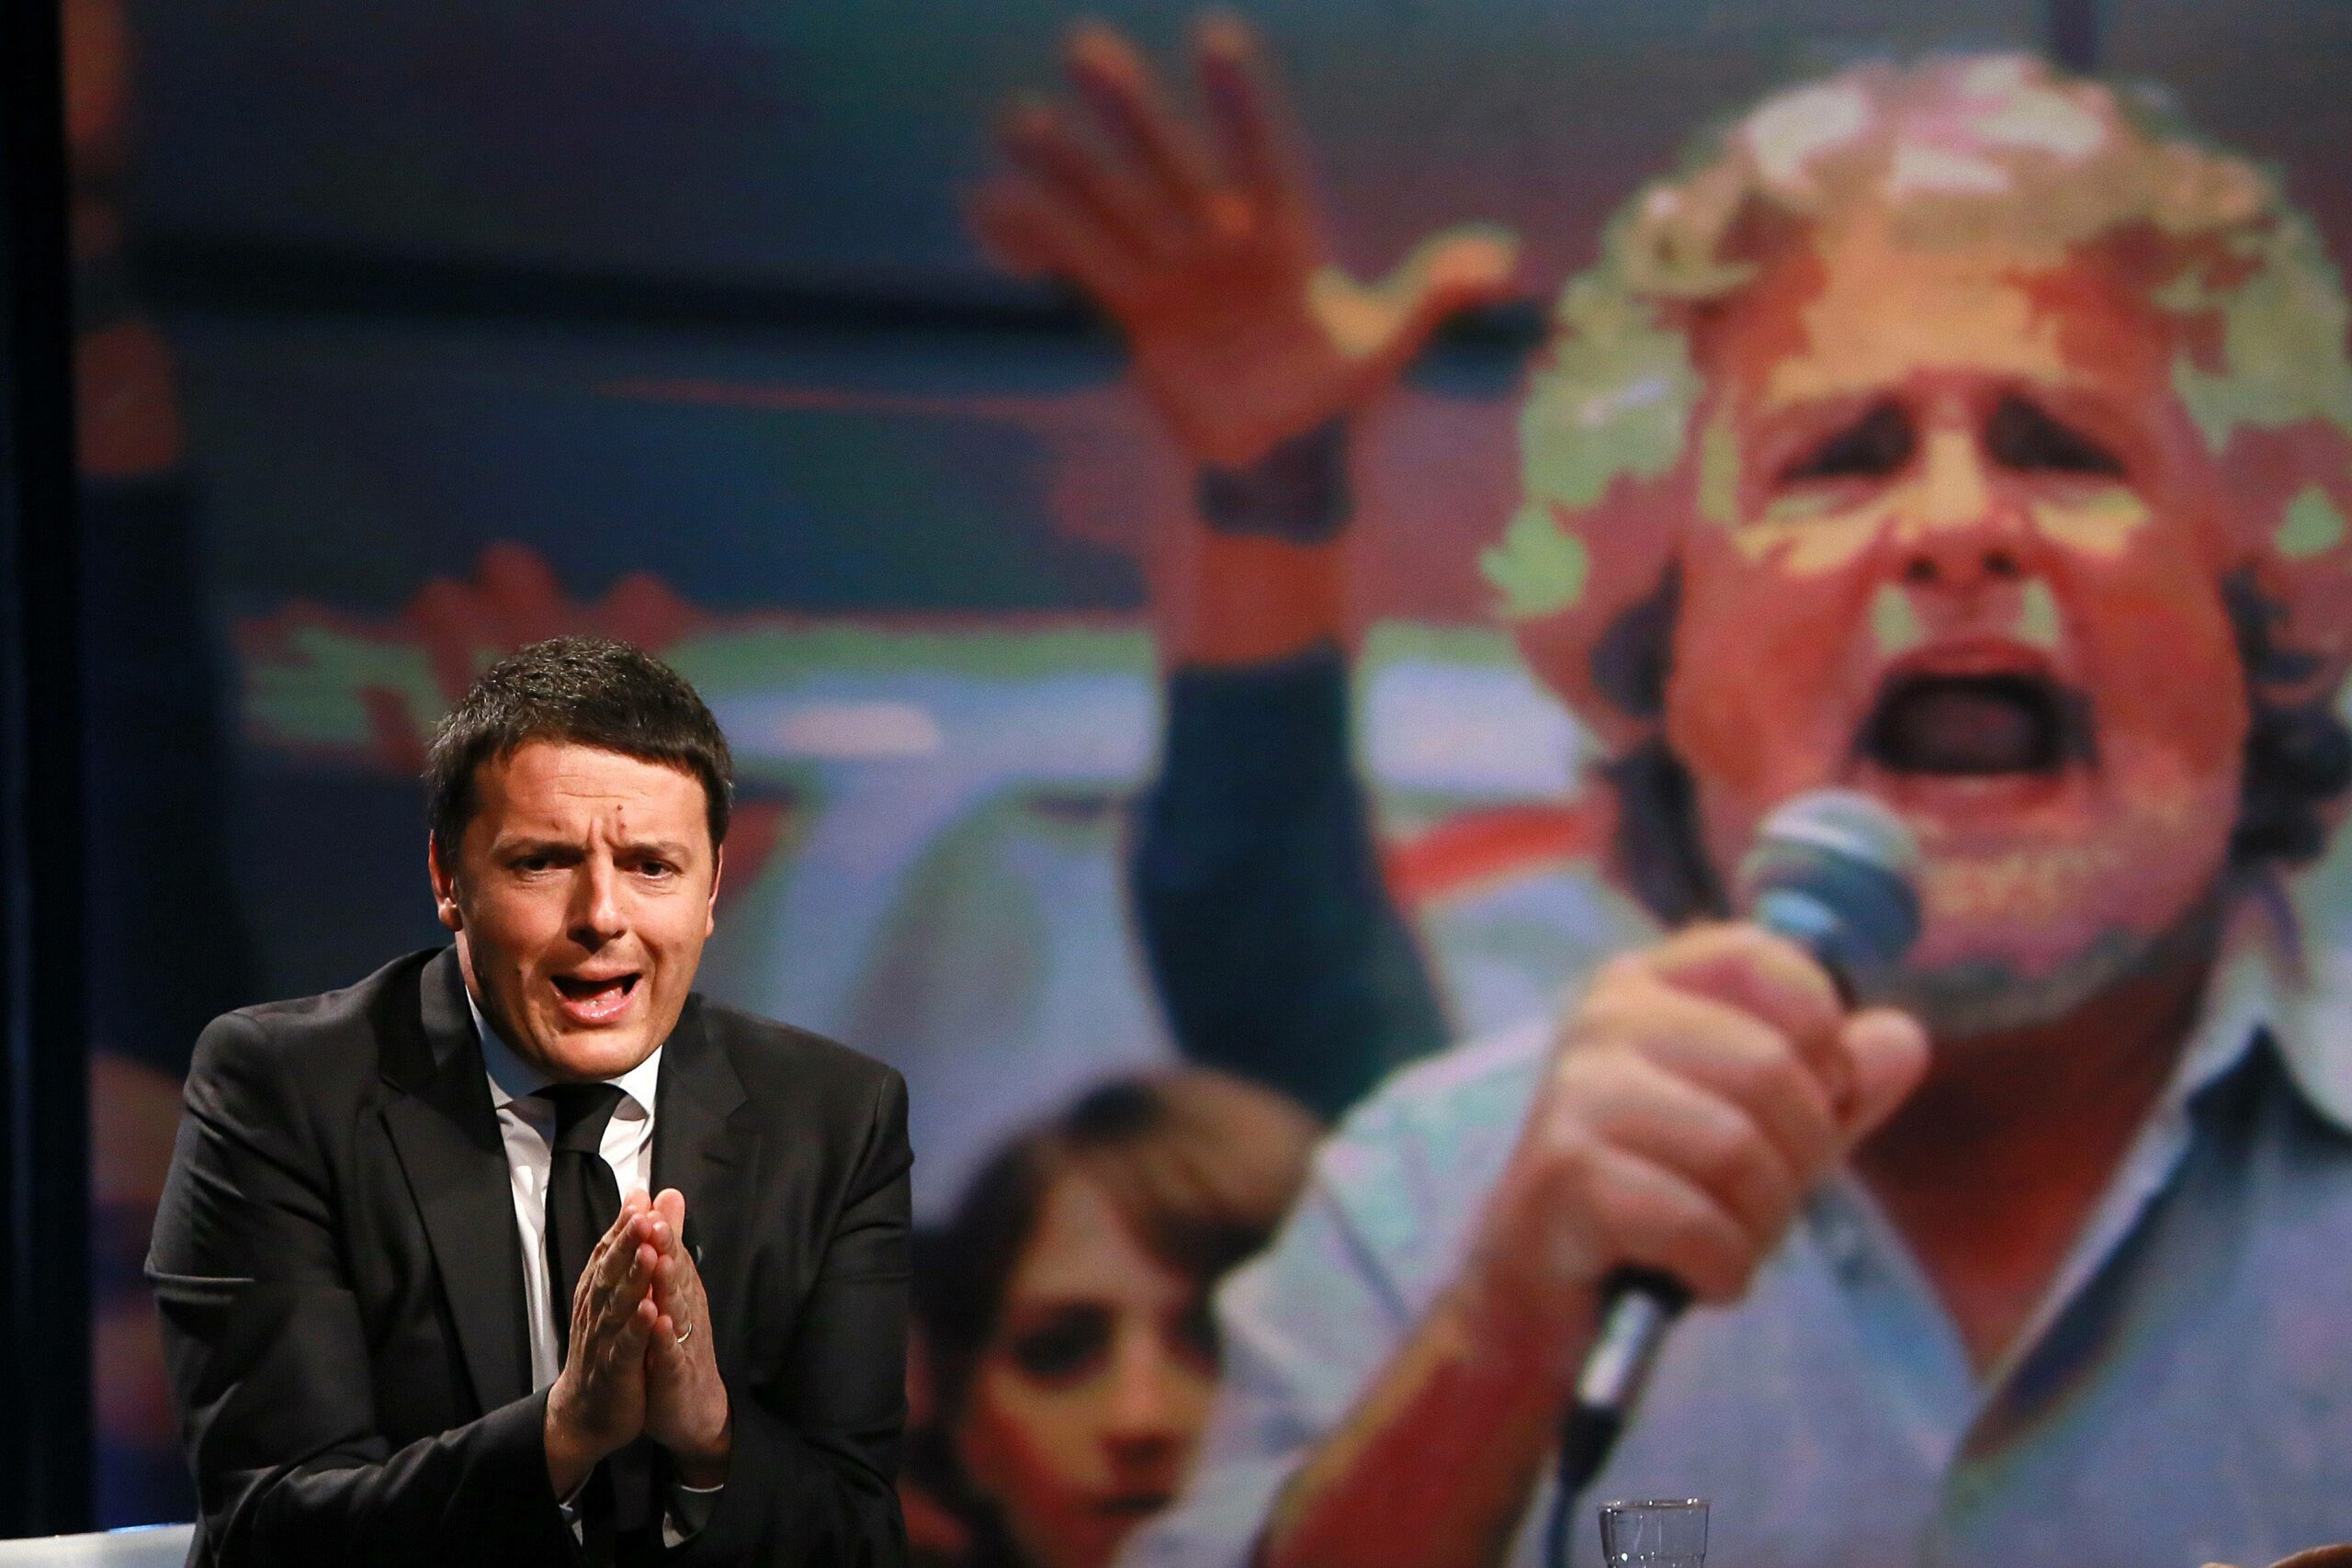 Italiassa niin pääministeri Matteo Renzi kuin oppositiojohtaja Beppe Grillo ovat vahvistaneet kannatustaan asettumalla vanhaa eliittiä vastaan. Kuva: All Over Press/Imago/Insidesphoto